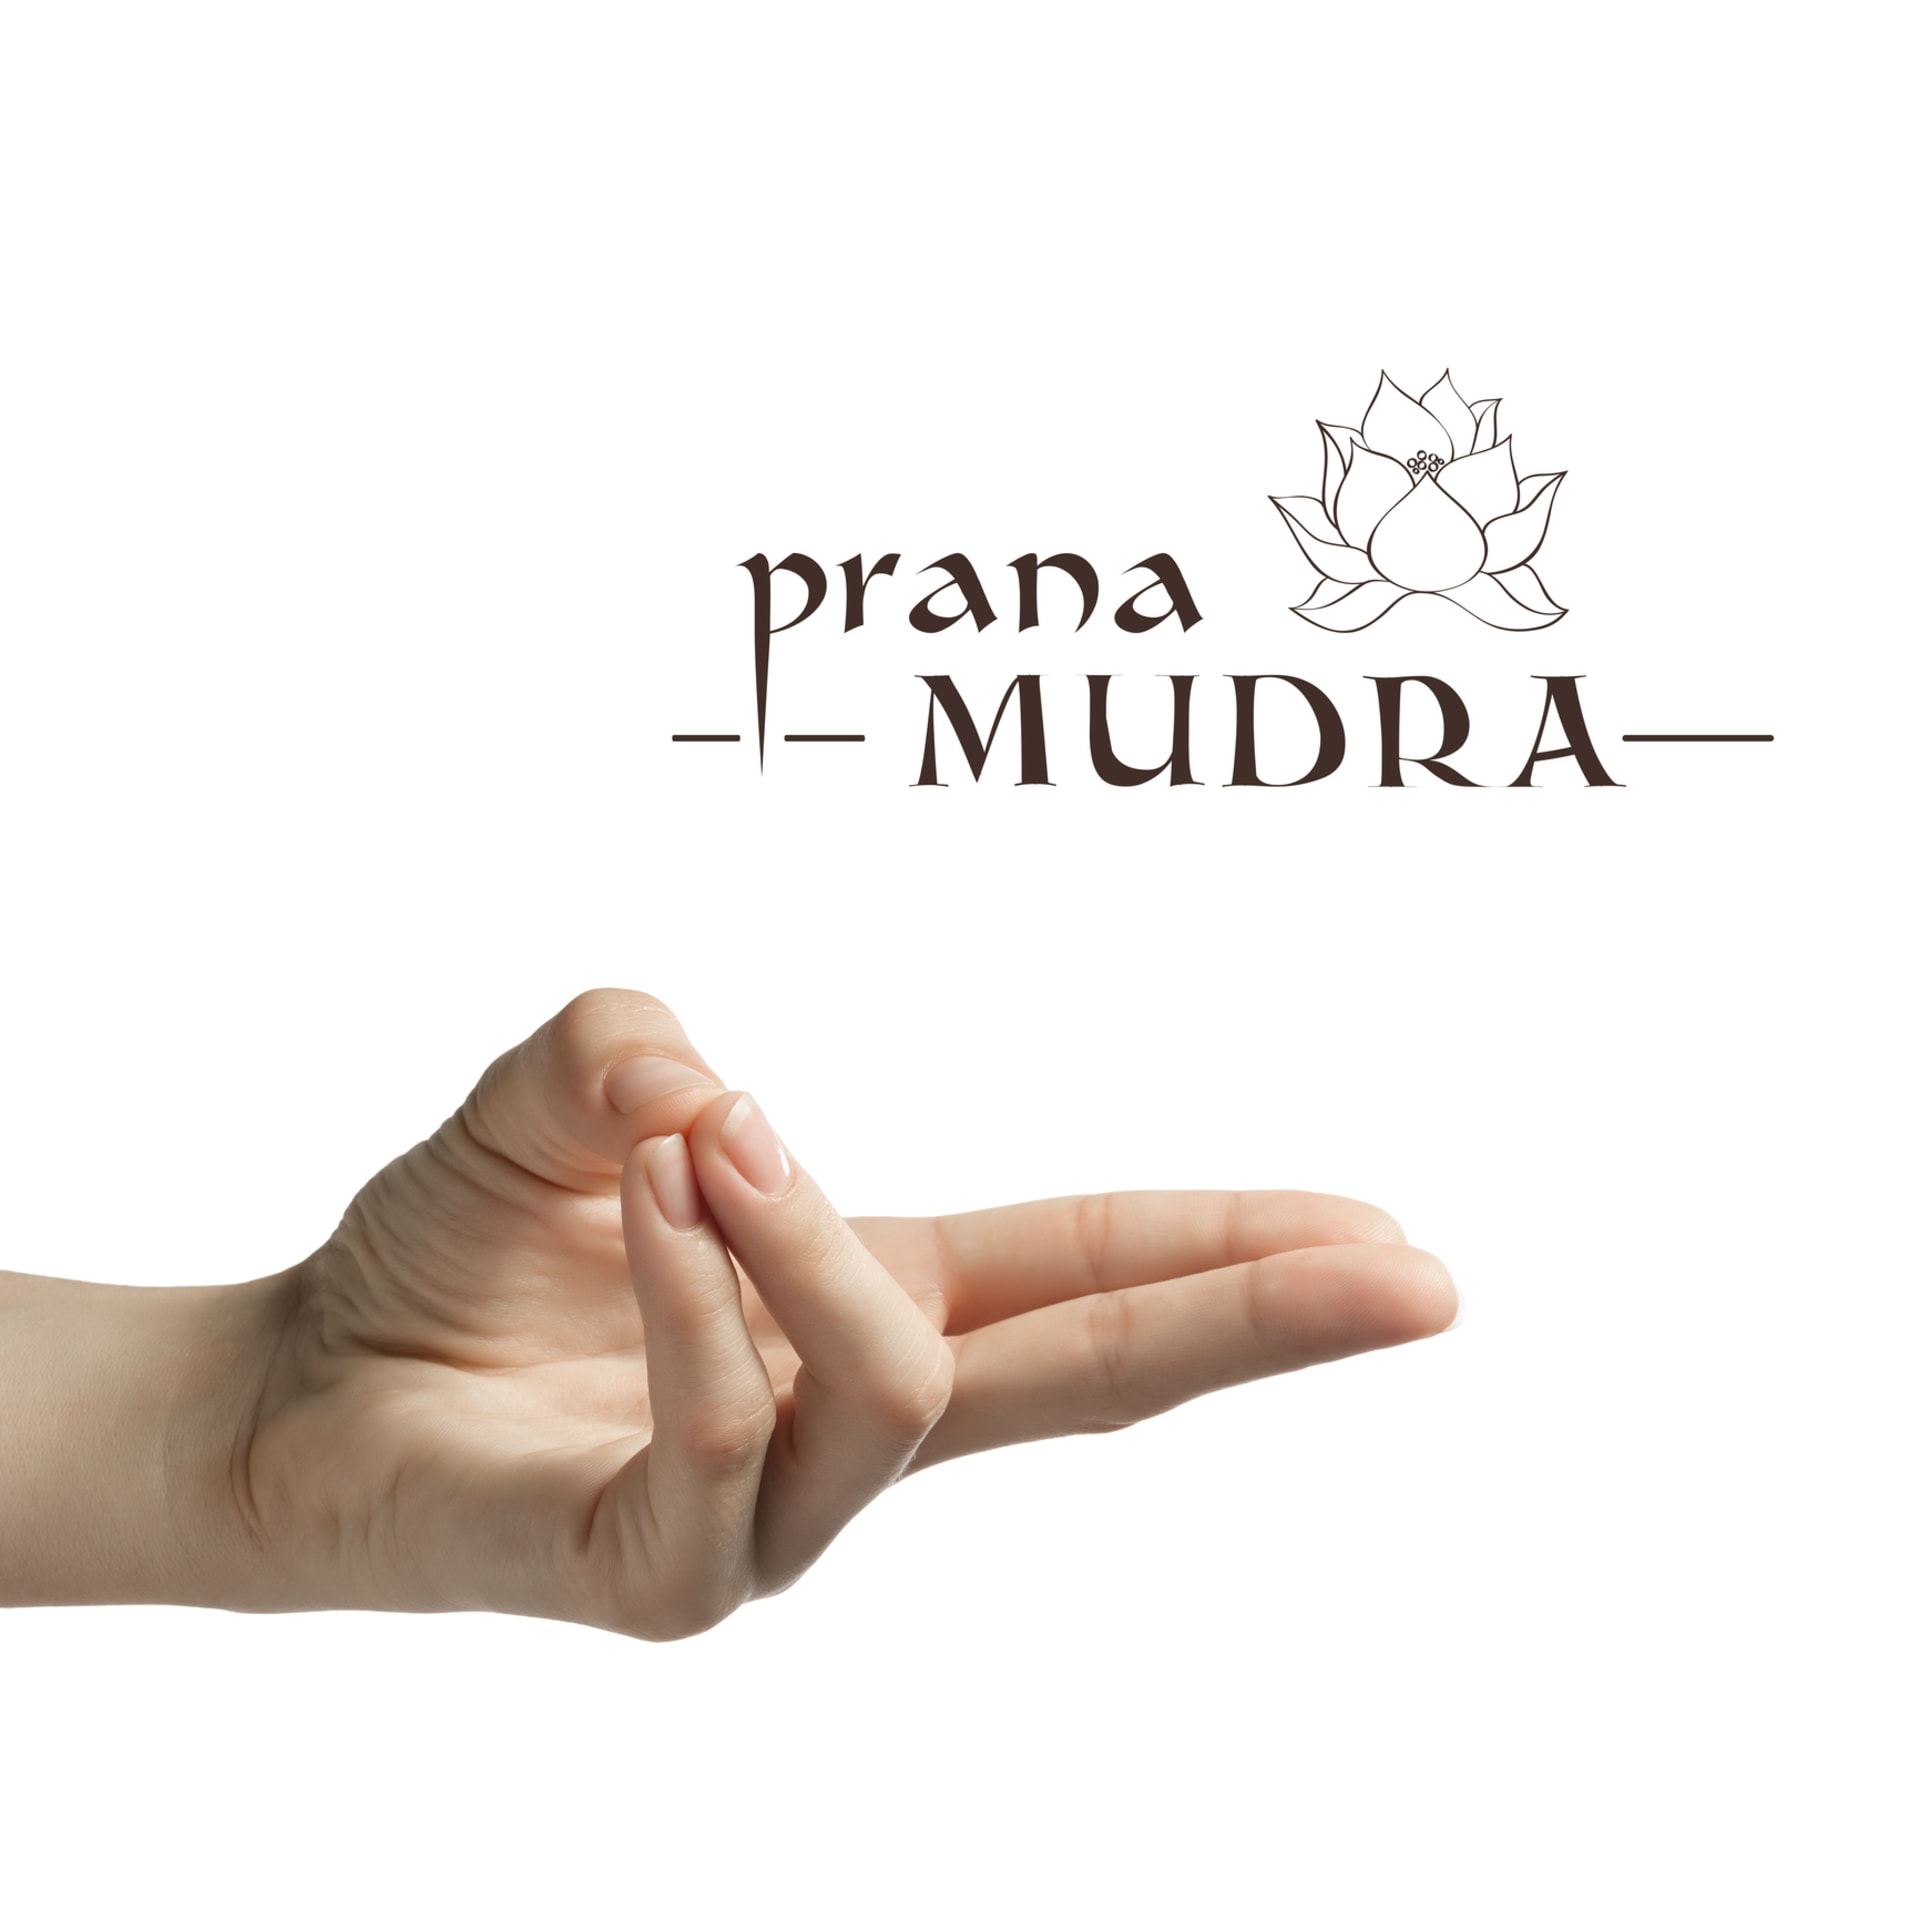 Prana Mudra zvyšuje energii, posiluje mysl, tělo a duši, zlepšuje imunitu a zrak.